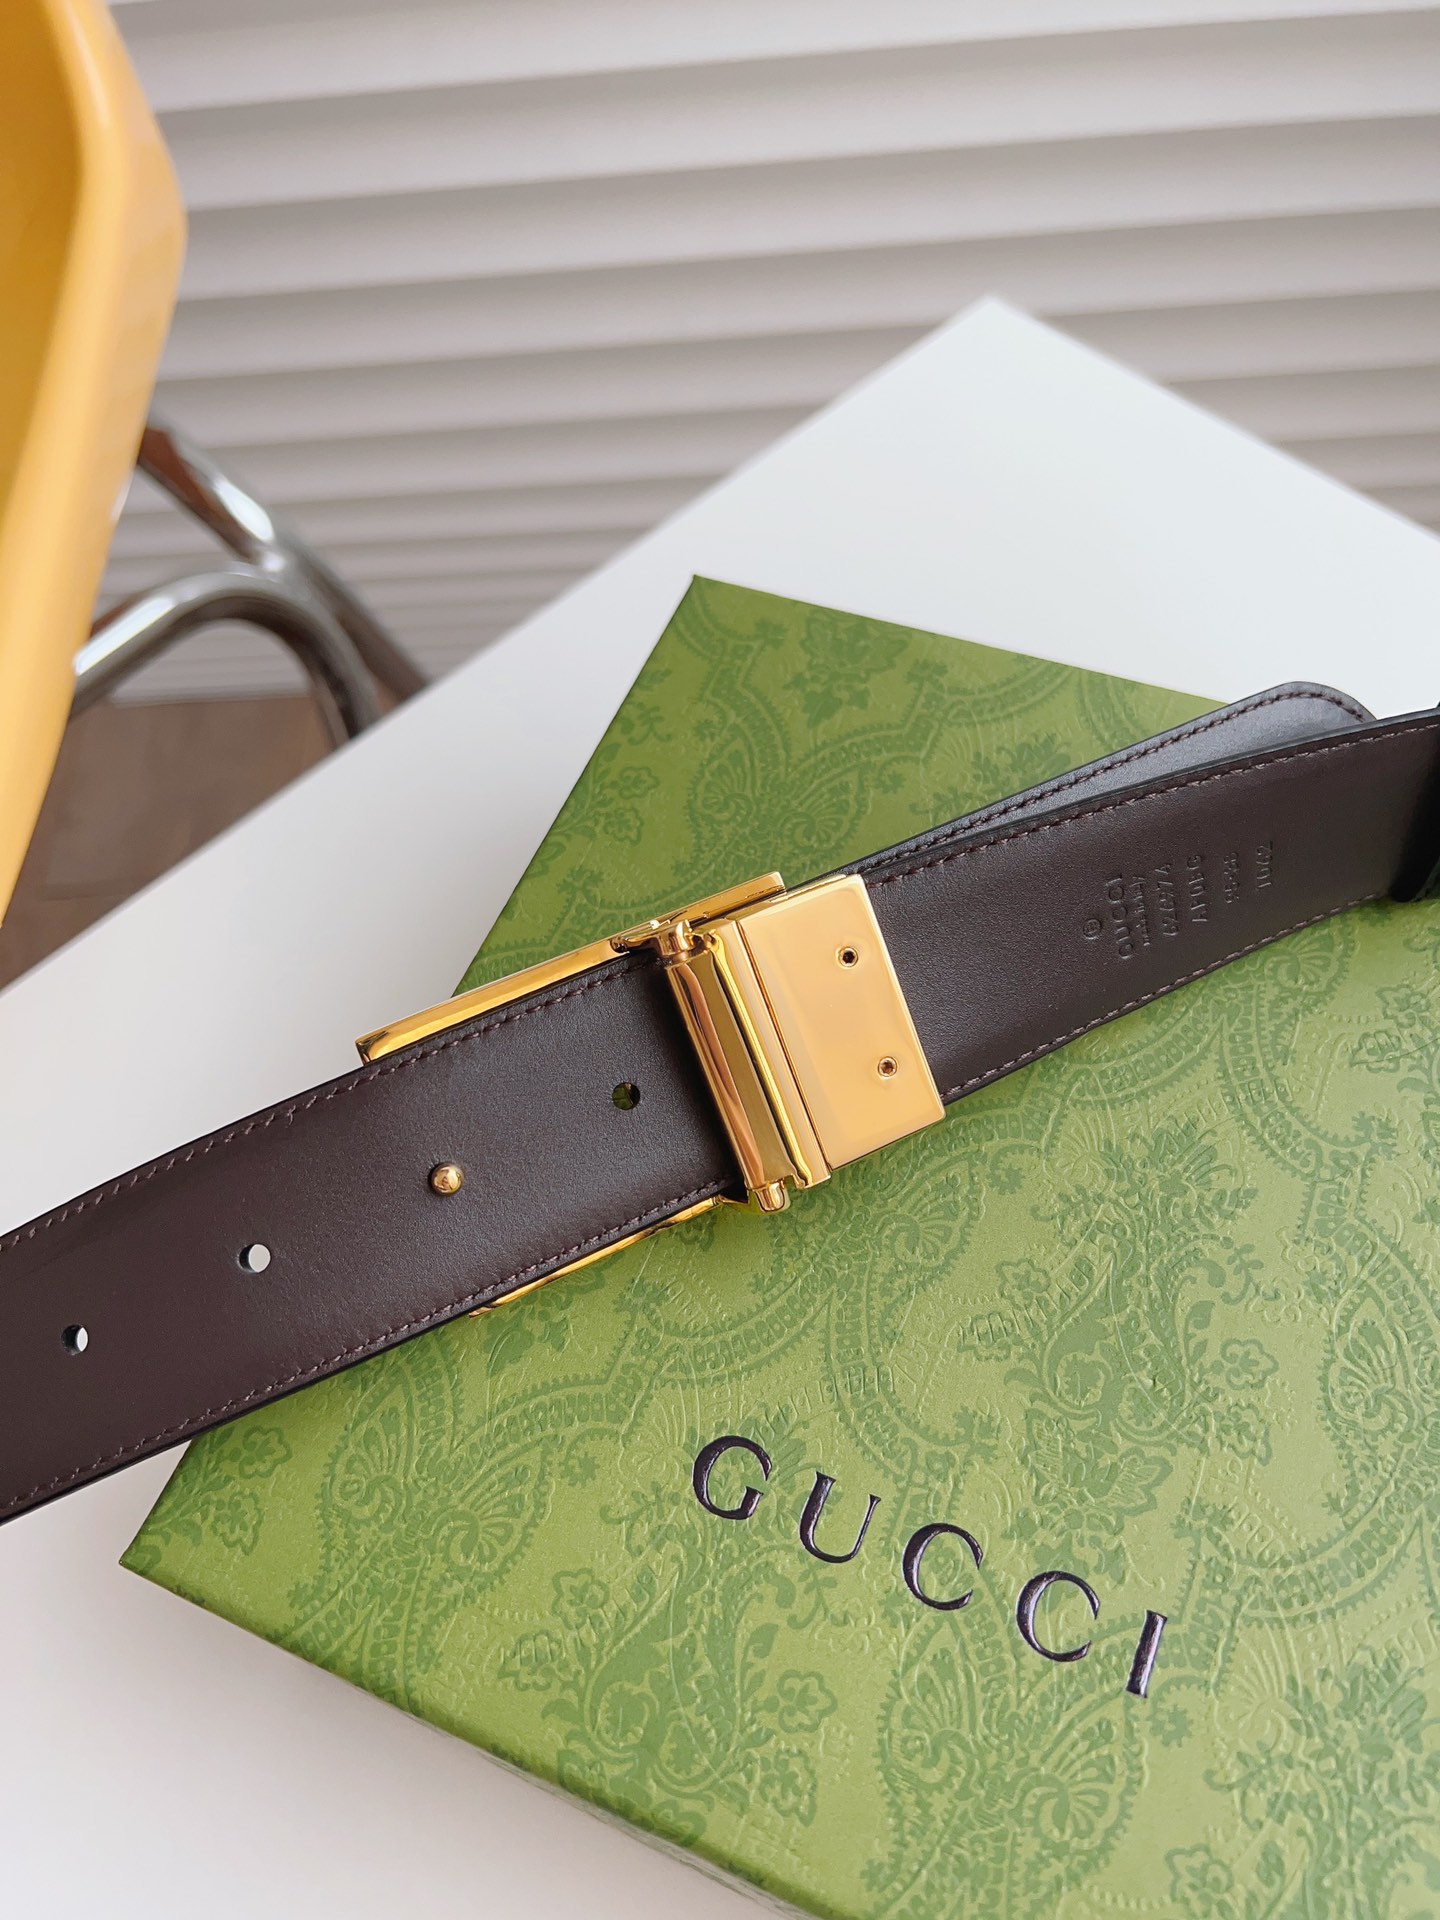 GUCCI黑棕两色双面小牛皮腰带配饰继续引领Gucci全新系列的潮流以独具匠心的丰富细节和实用功能演绎出